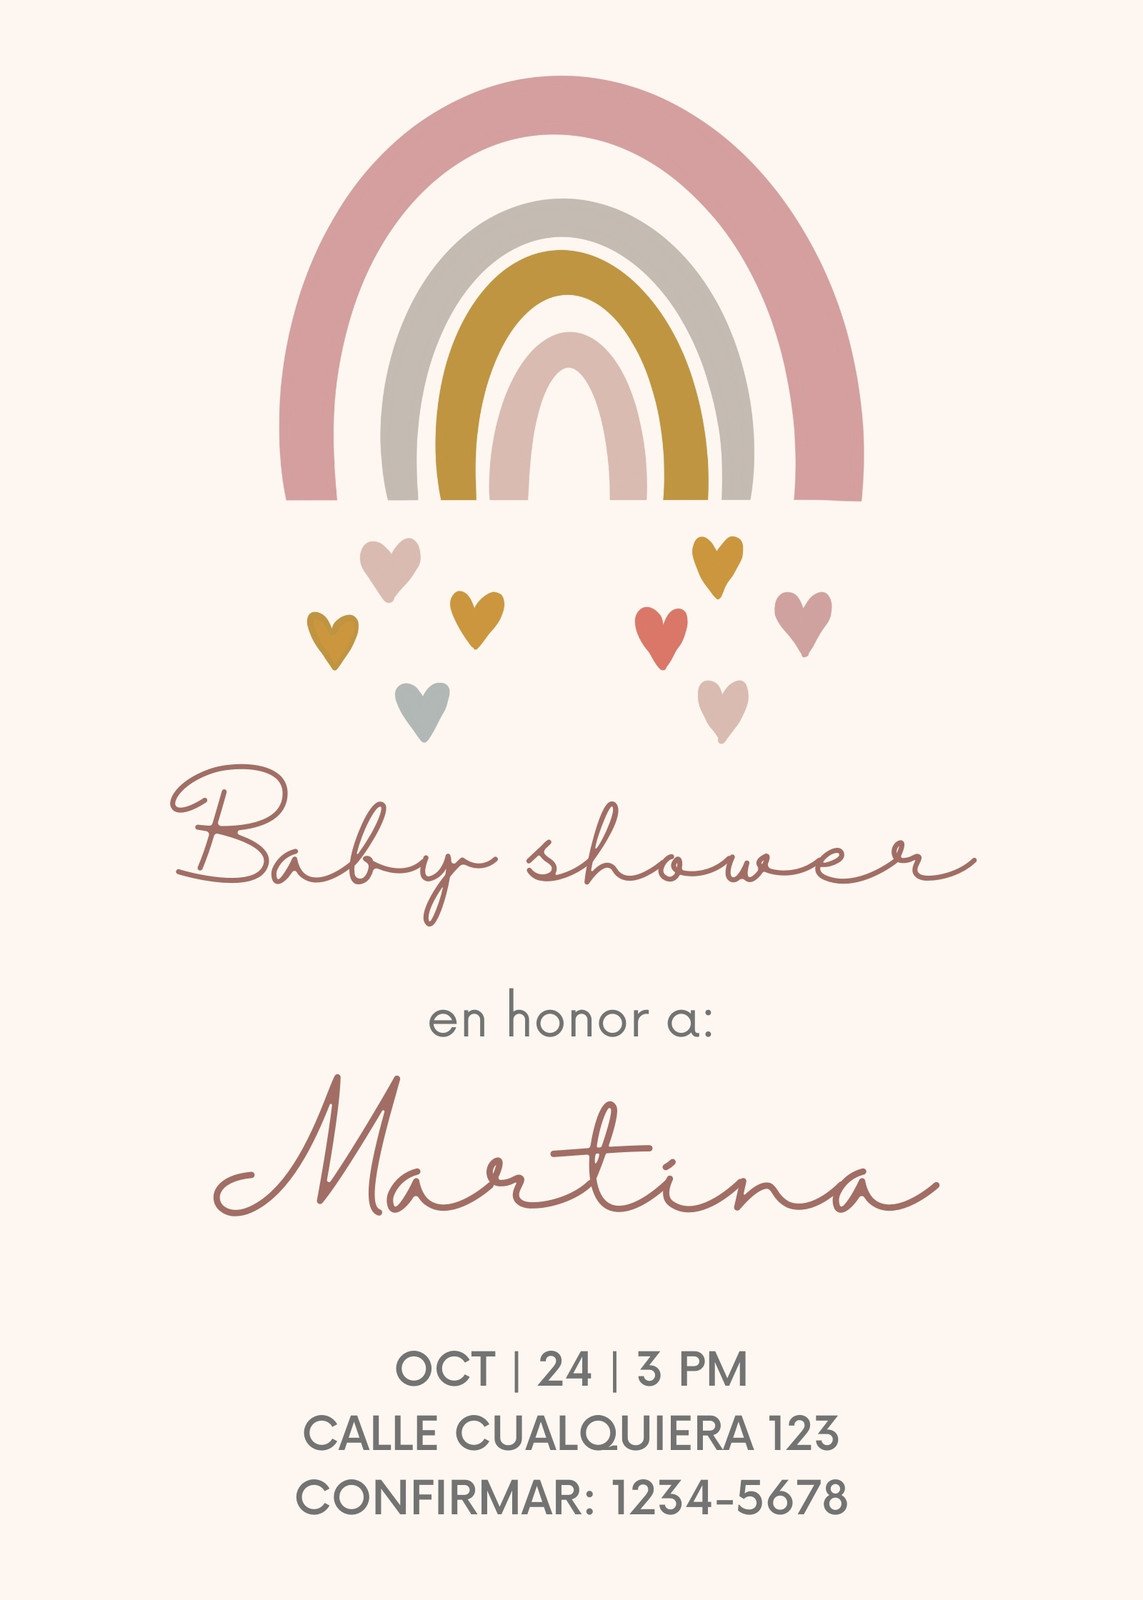 Baby Shower Vectores, Iconos, Gráficos y Fondos para Descargar Gratis